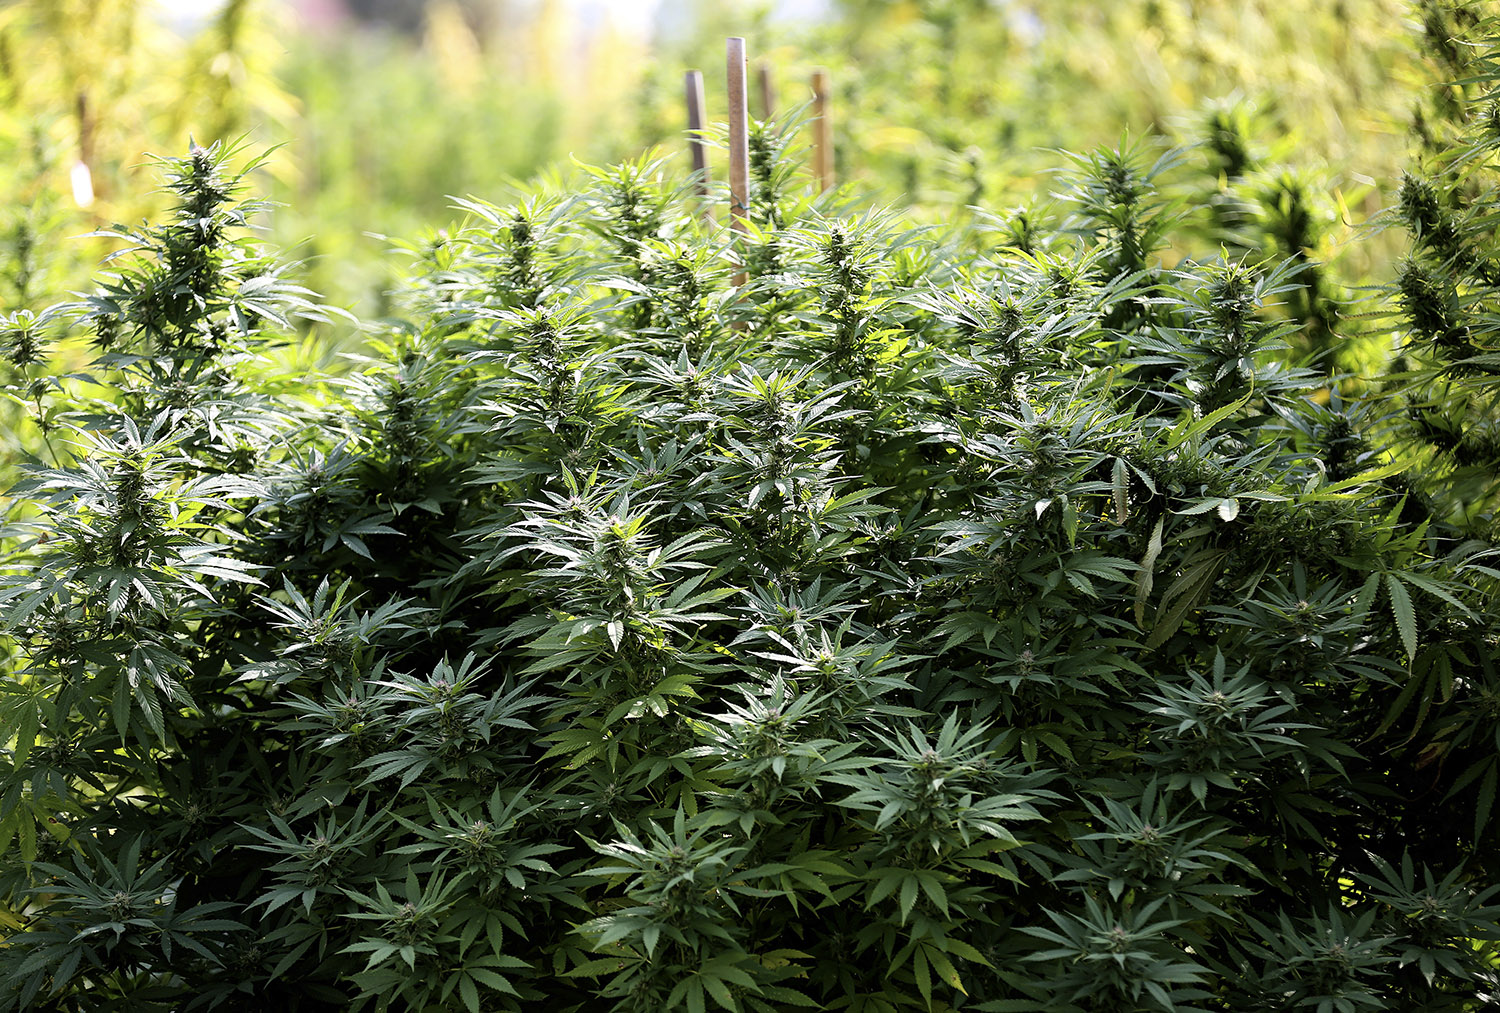 Incautadas 9 toneladas de marihuana en una plantación en Lorca, Murcia